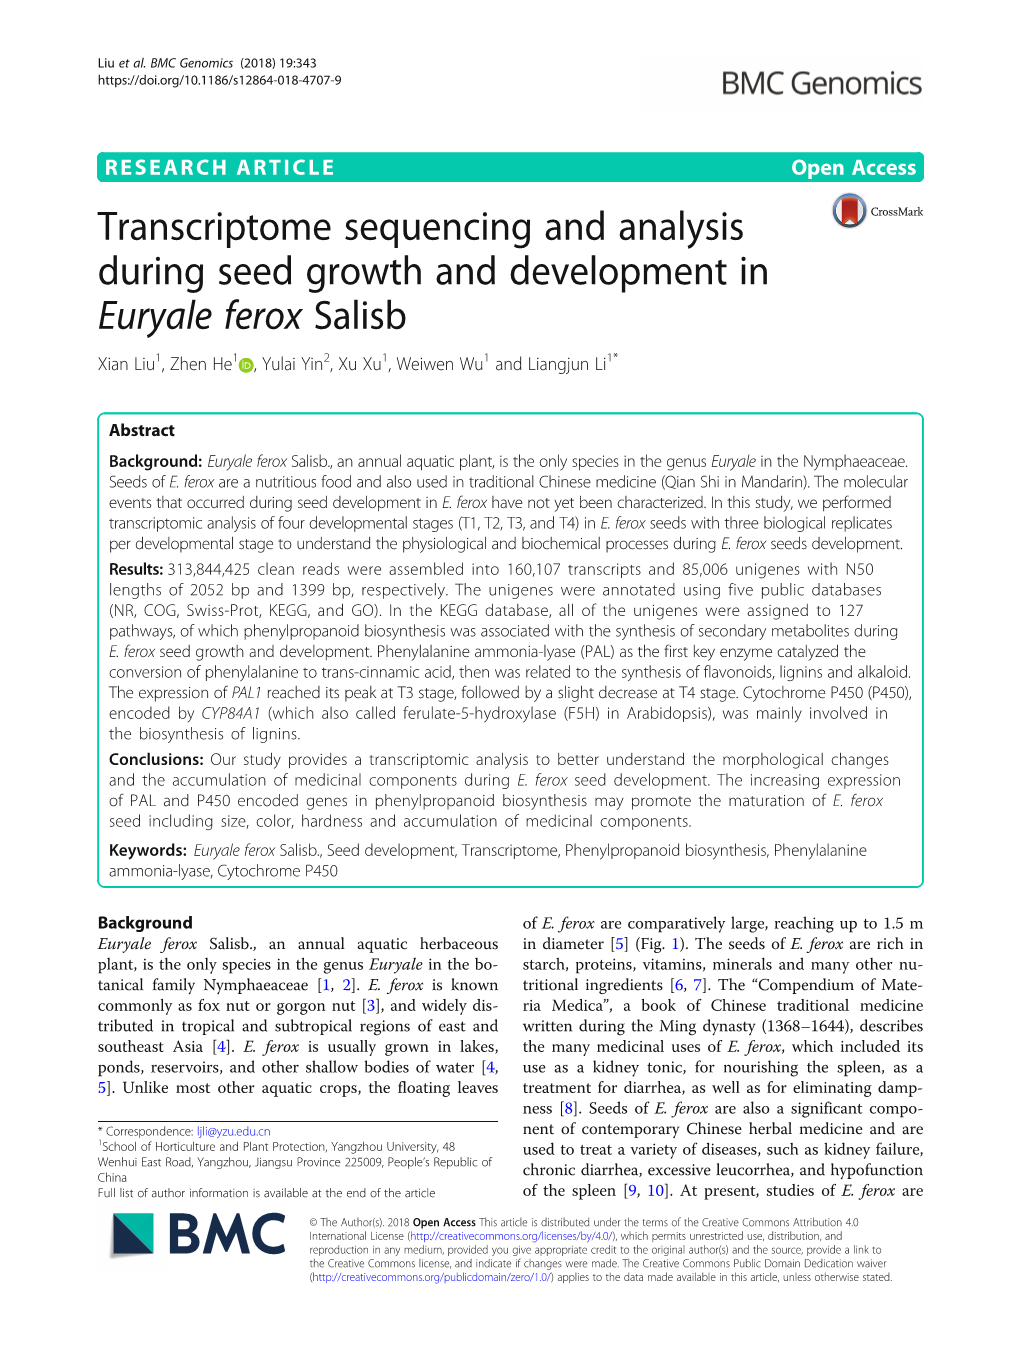 Transcriptome Sequencing and Analysis During Seed Growth and Development in Euryale Ferox Salisb Xian Liu1, Zhen He1 , Yulai Yin2,Xuxu1, Weiwen Wu1 and Liangjun Li1*